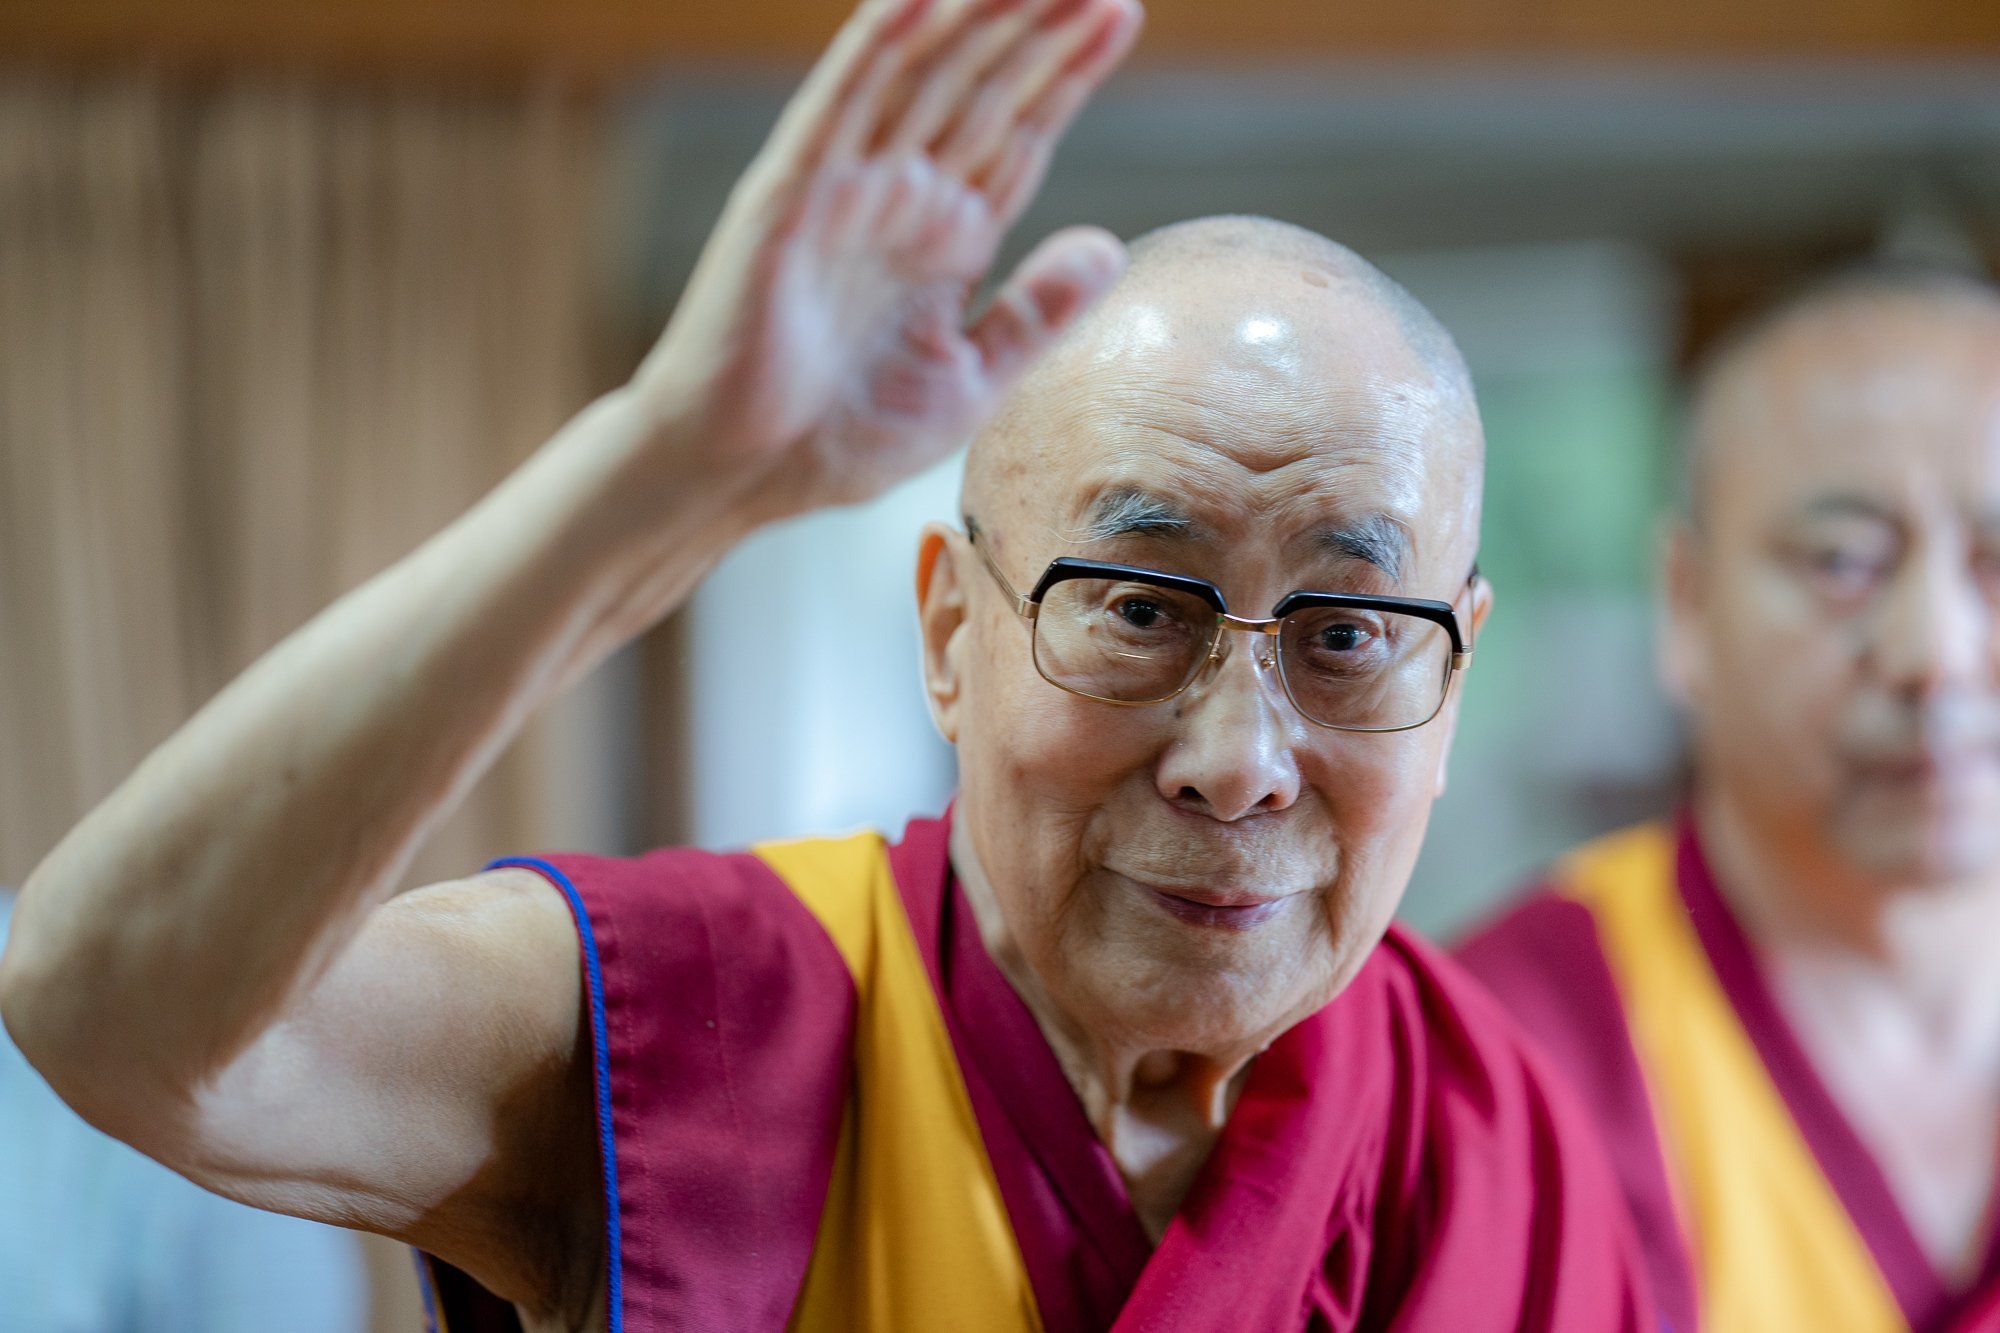 Dalai Lama XIV turns 85